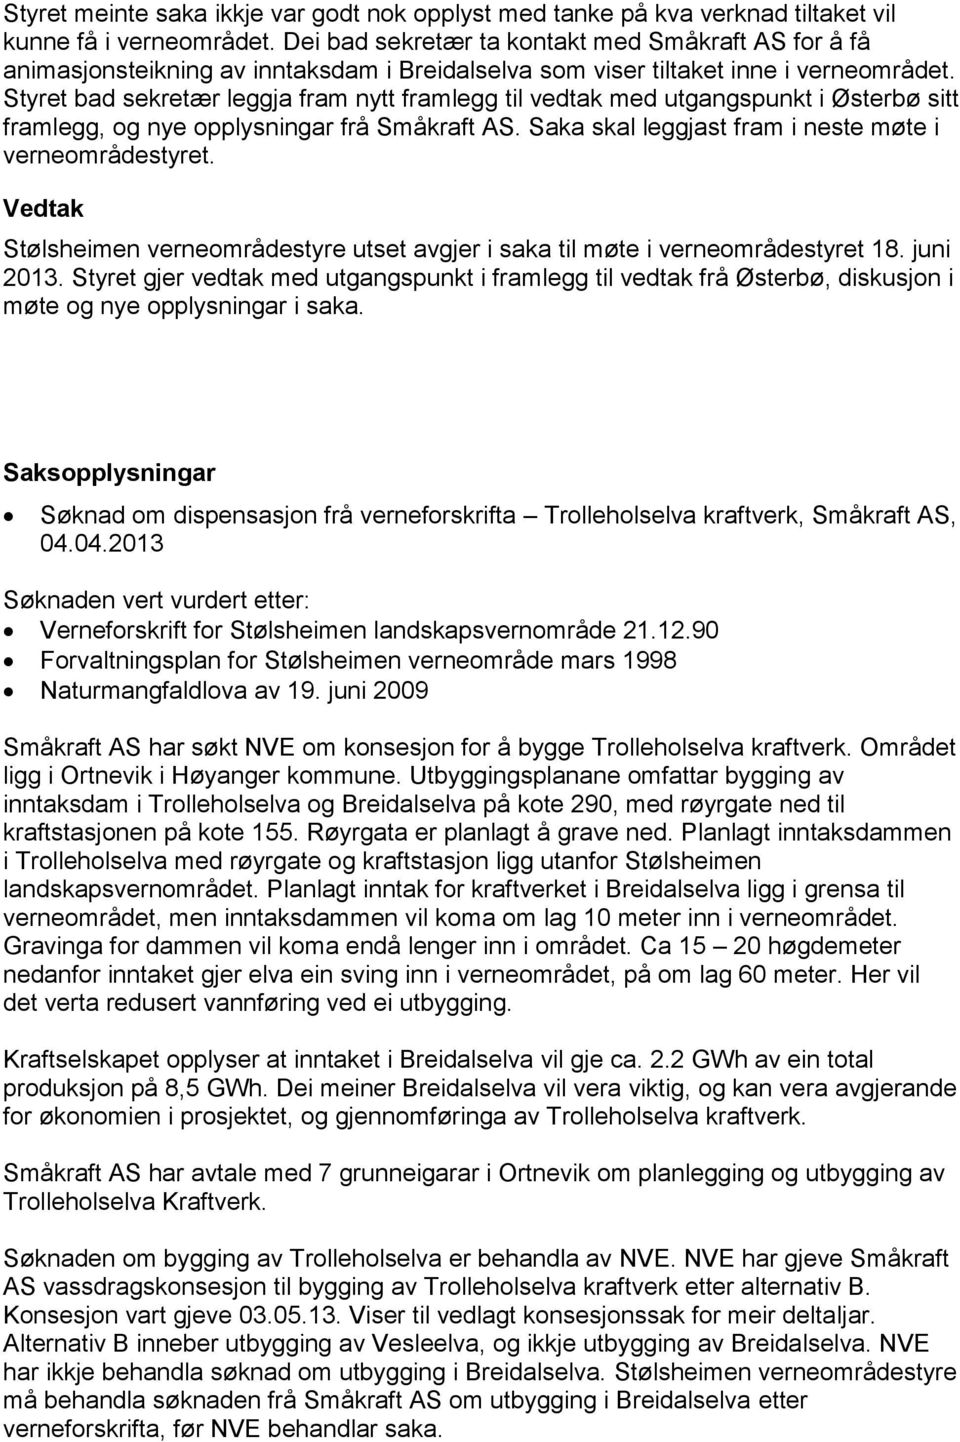 Styret bad sekretær leggja fram nytt framlegg til vedtak med utgangspunkt i Østerbø sitt framlegg, og nye opplysningar frå Småkraft AS. Saka skal leggjast fram i neste møte i verneområdestyret.